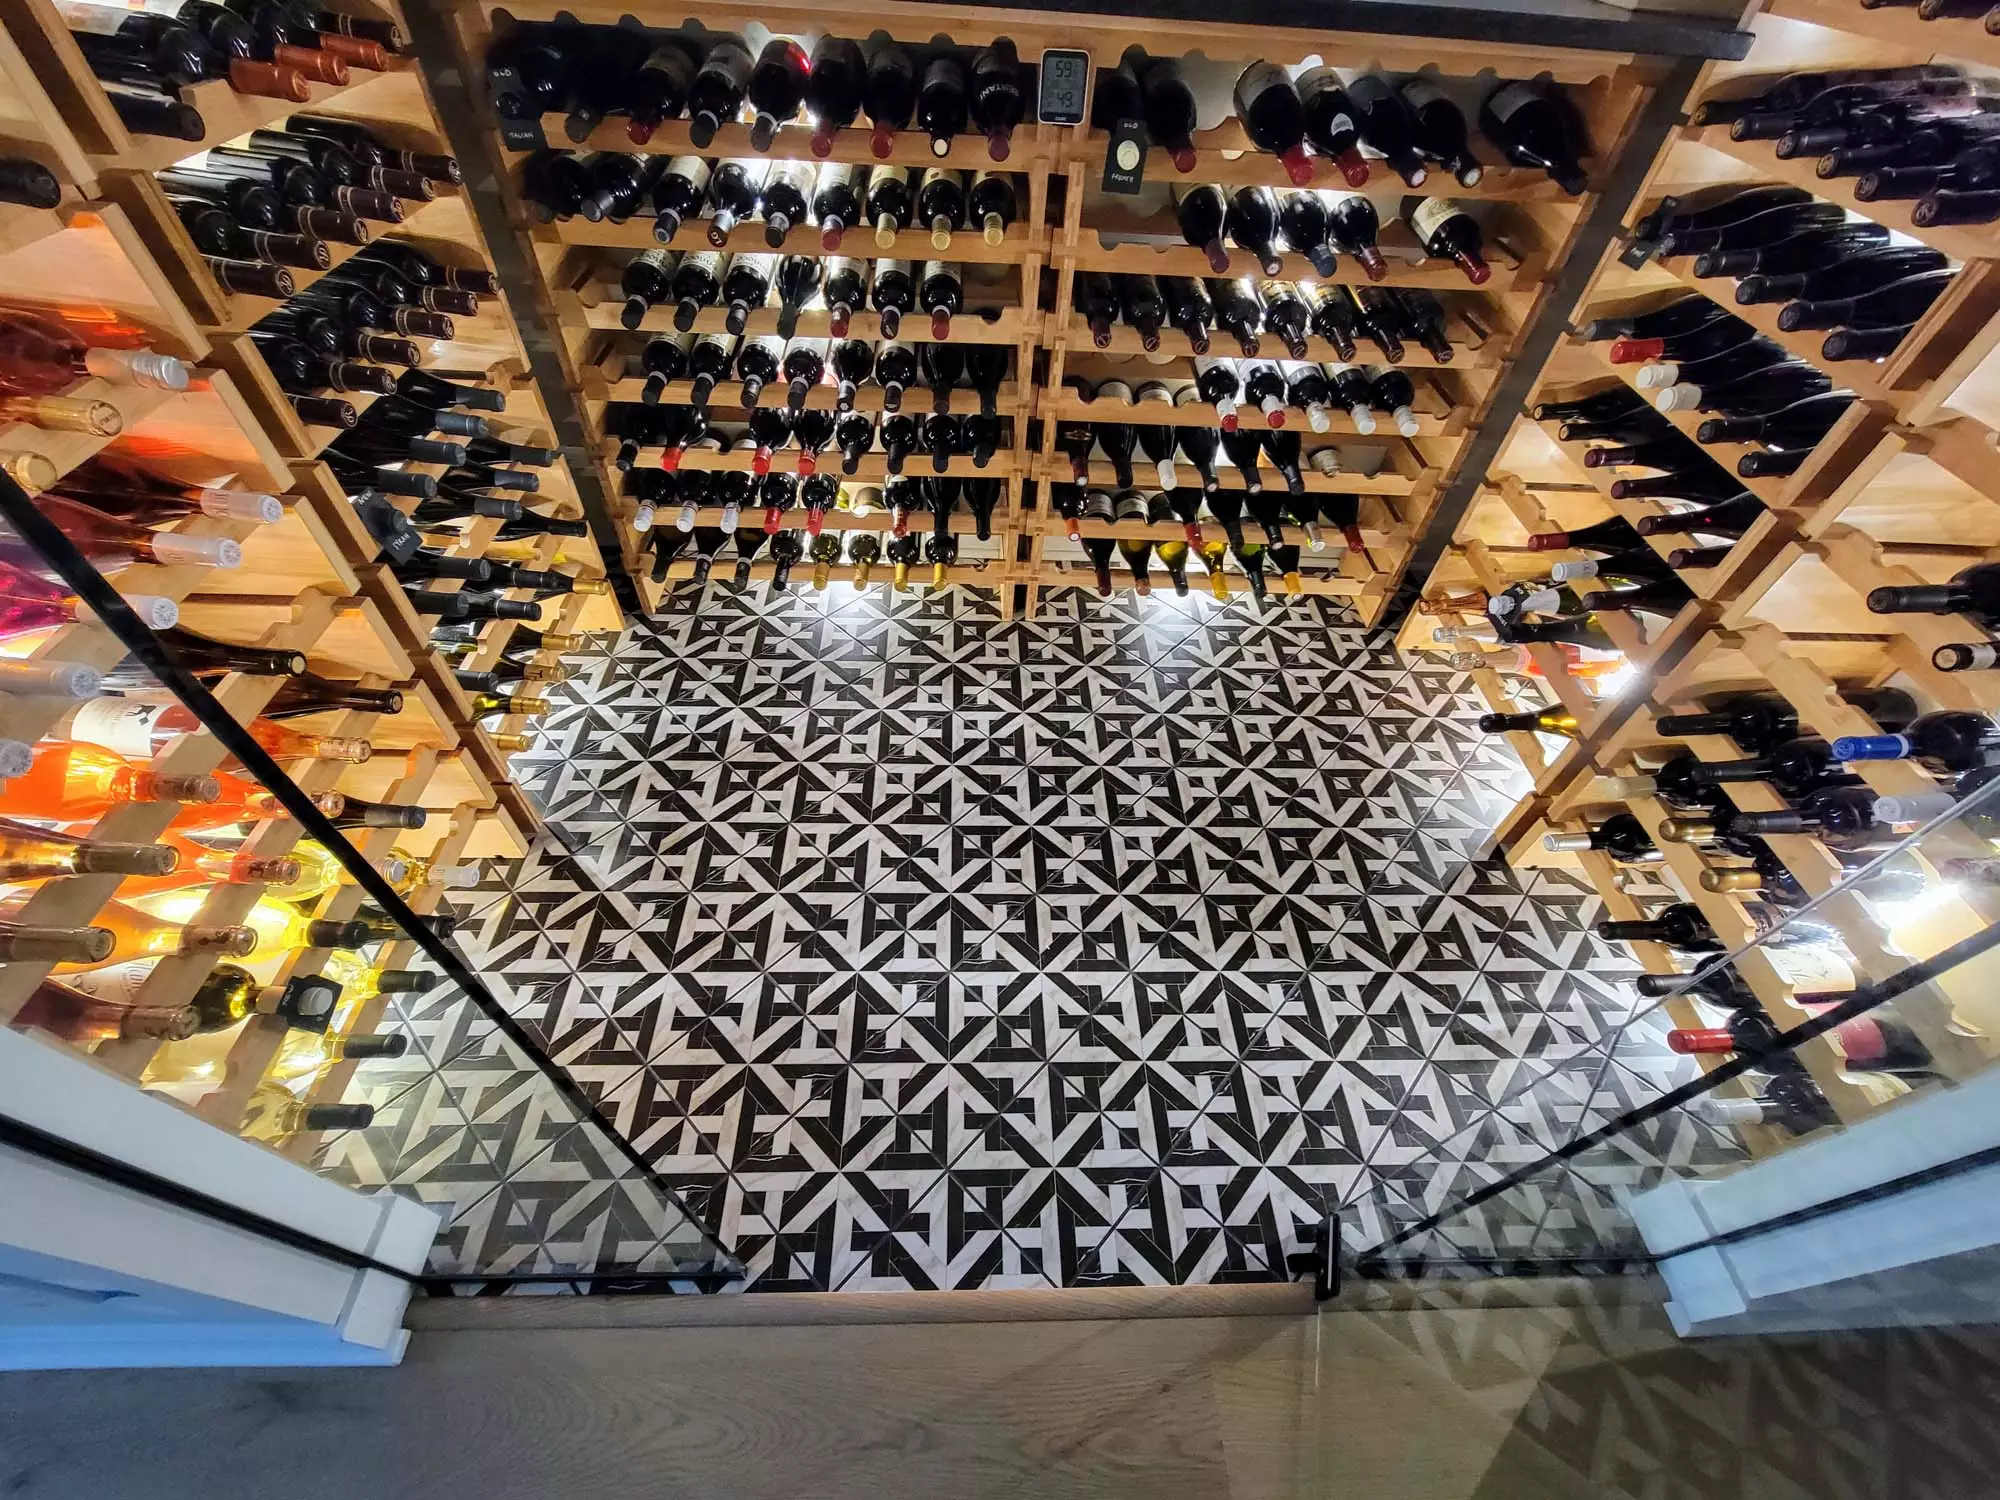 Wine Cellar Fun tile layout/ pattern